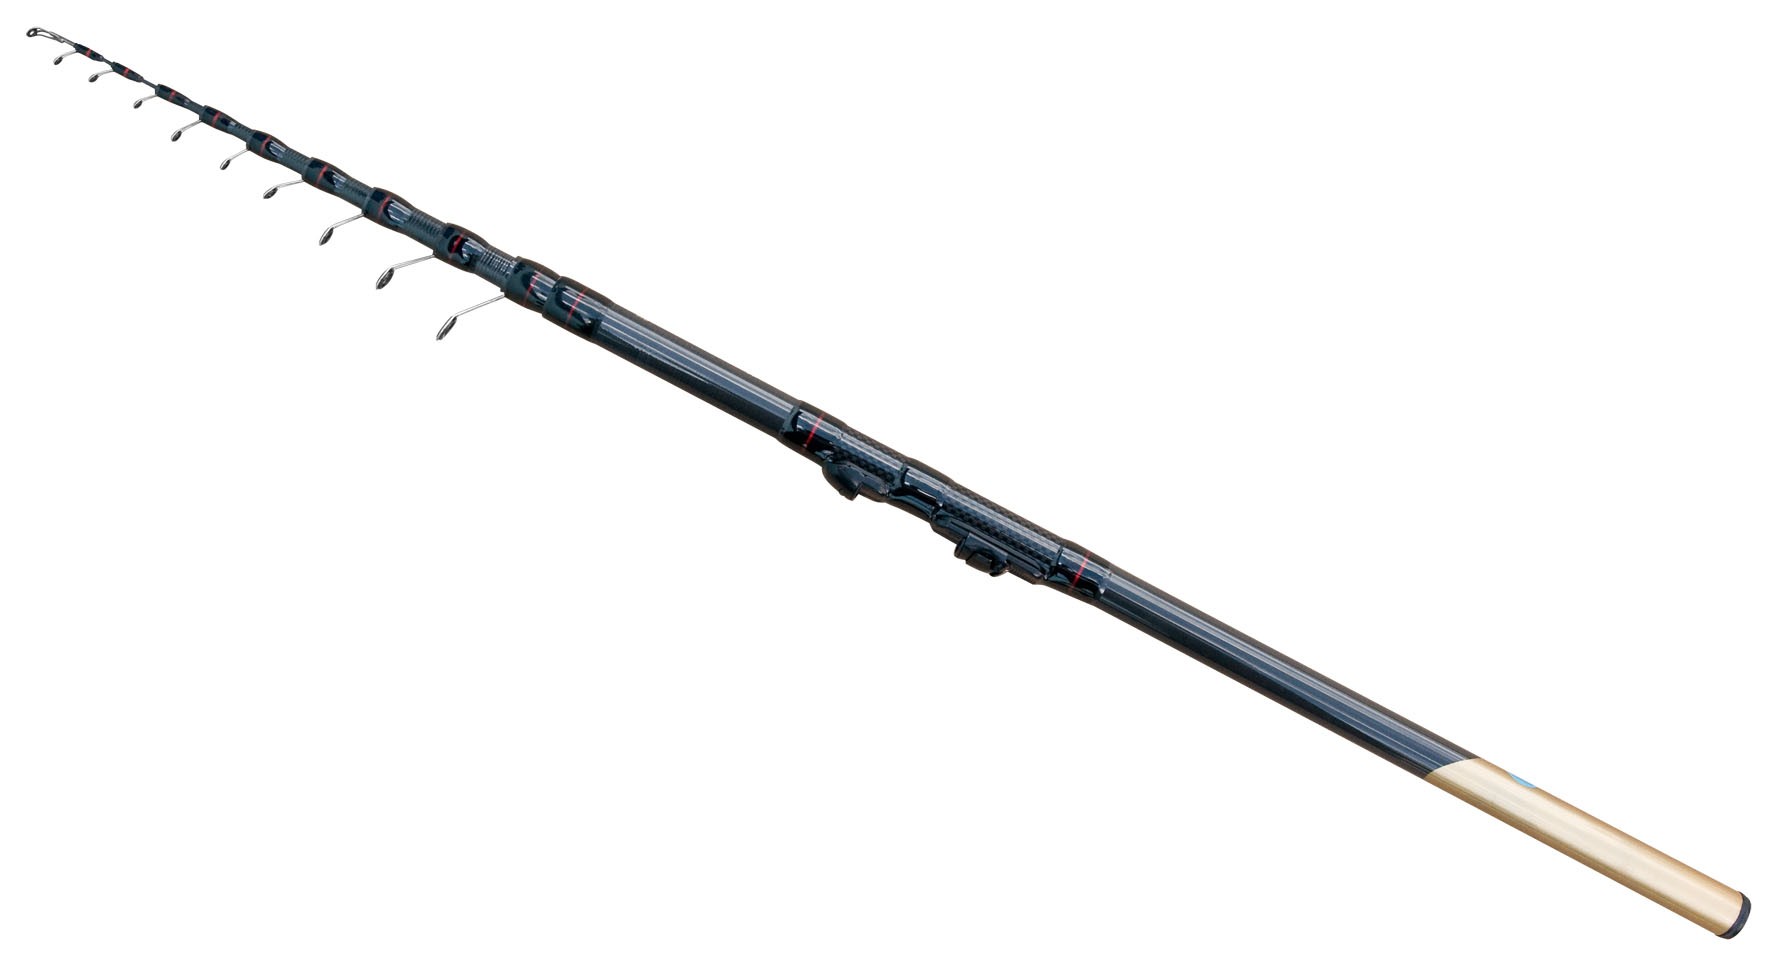 Lanseta bolognesa fibra de carbon Smart Trout 4 m A: 10-30 g